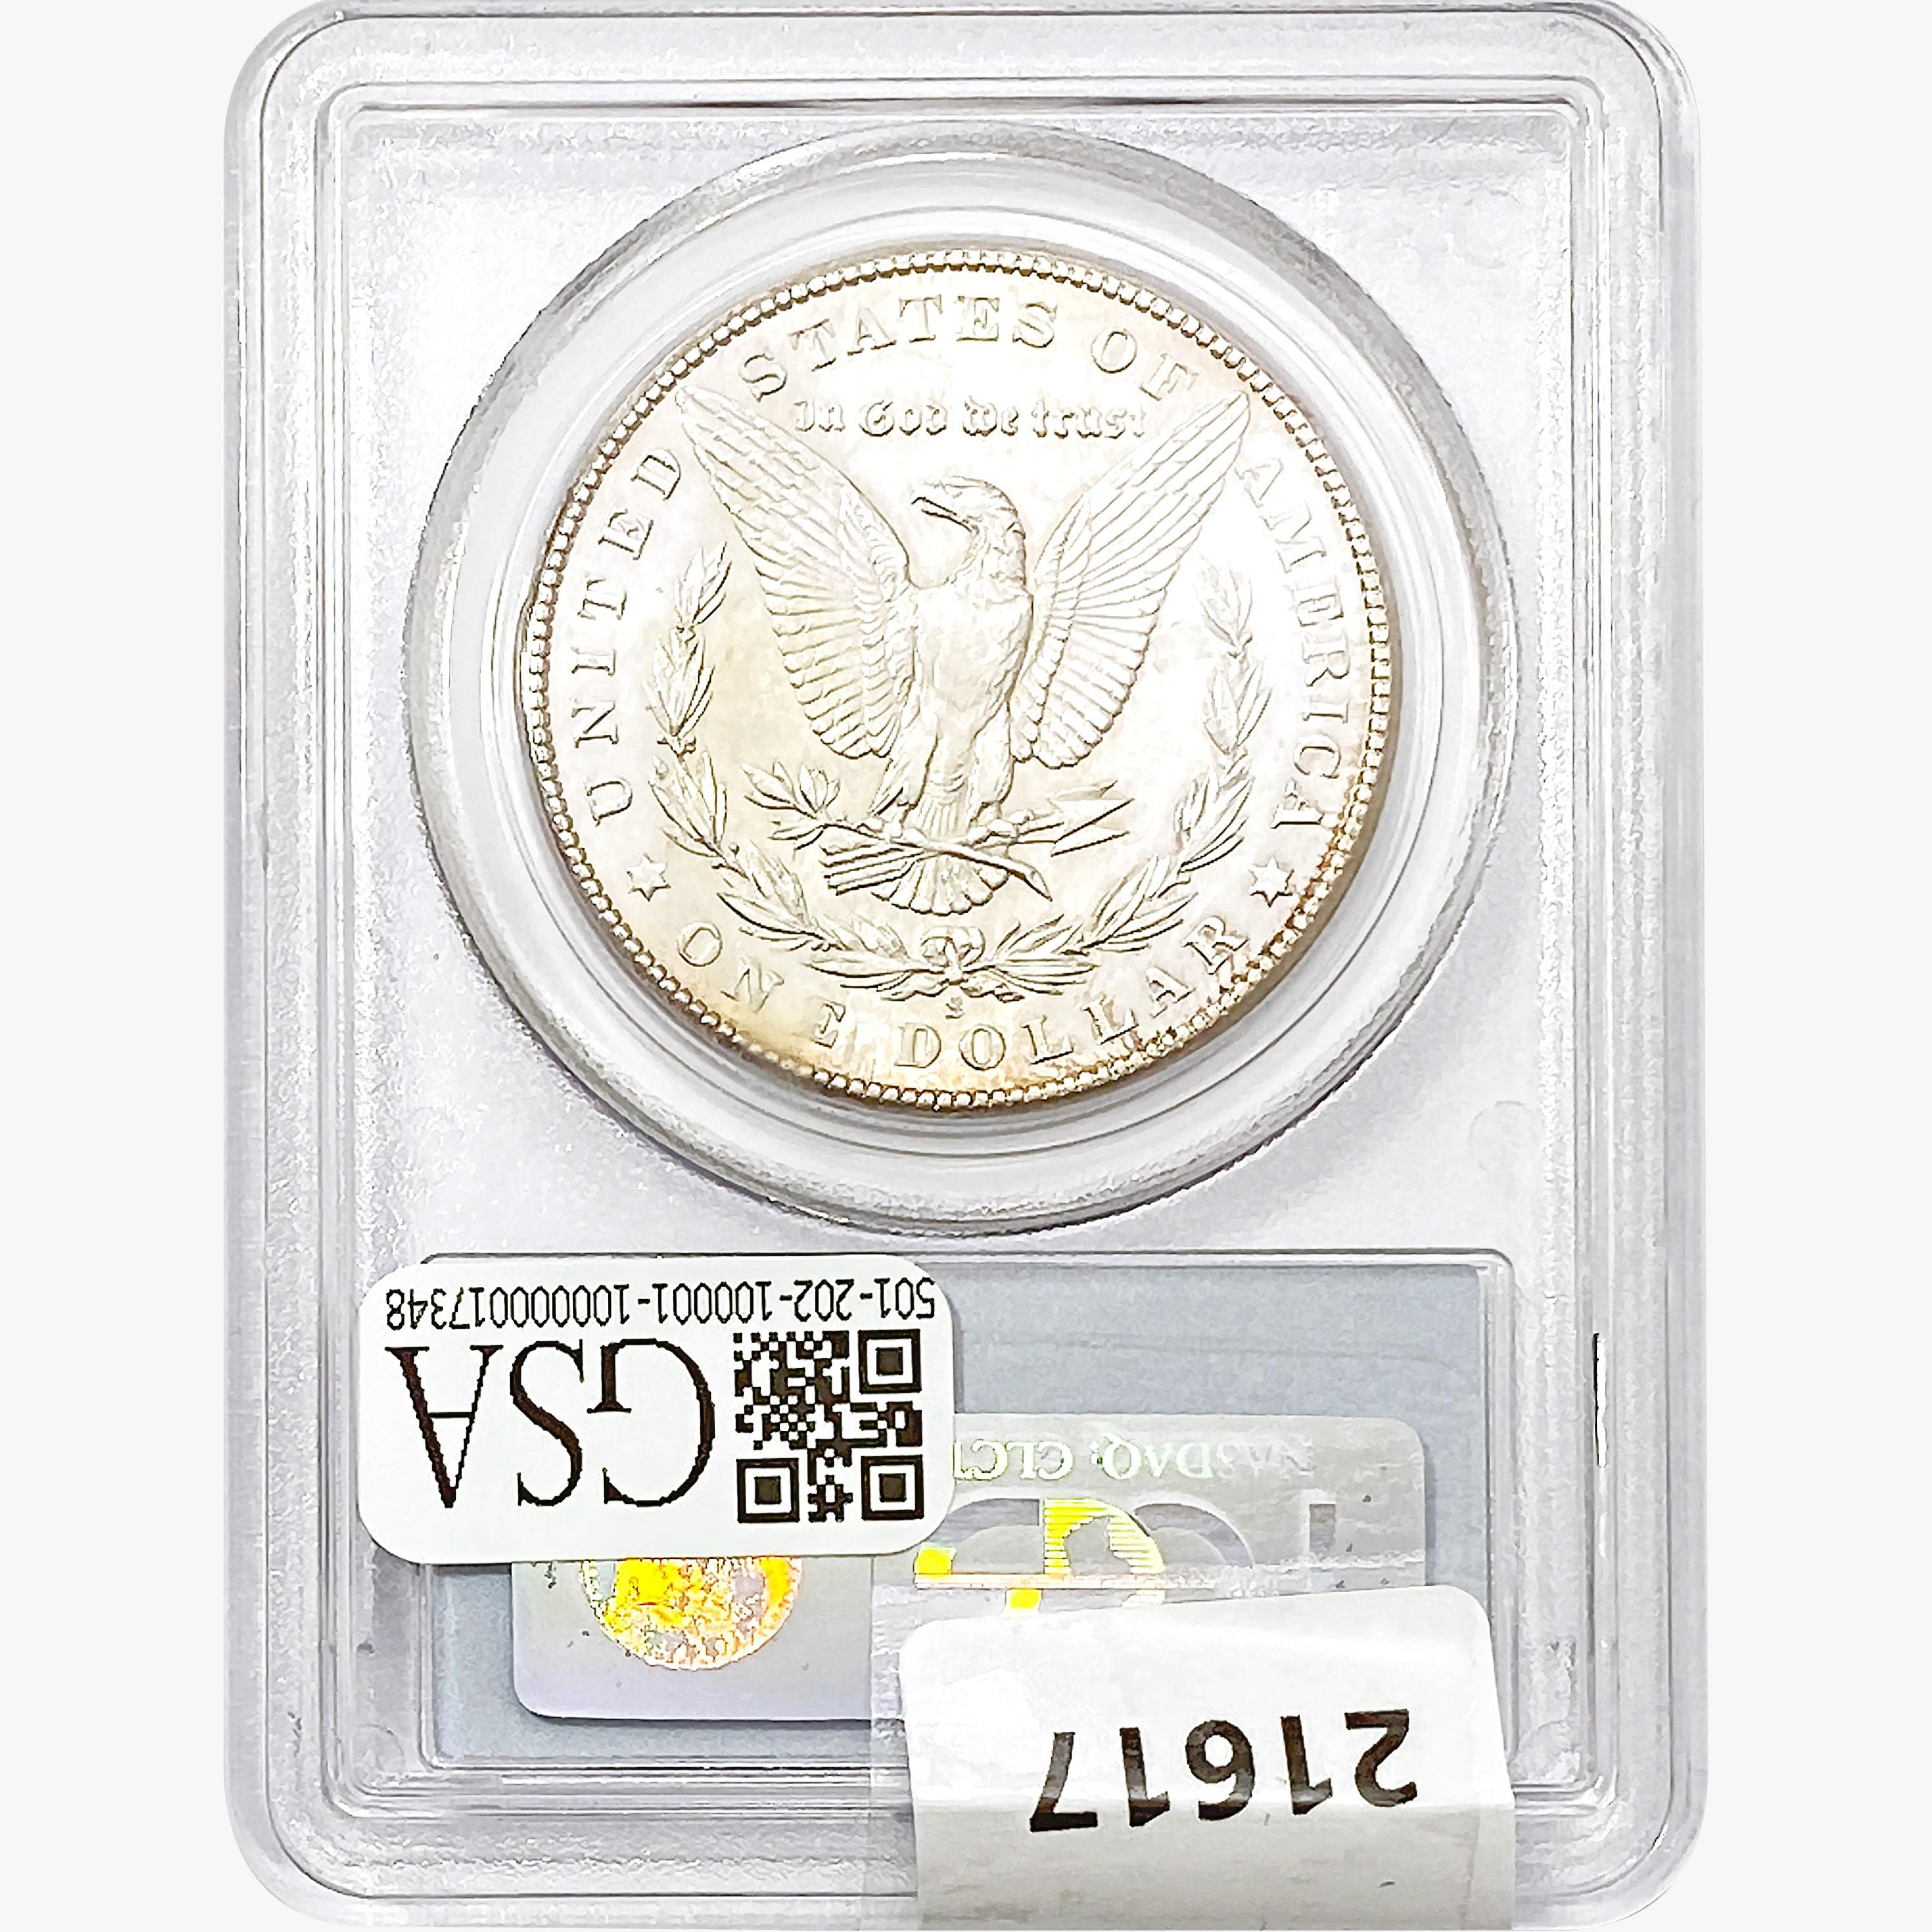 1900-S Morgan Silver Dollar PCGS AU58